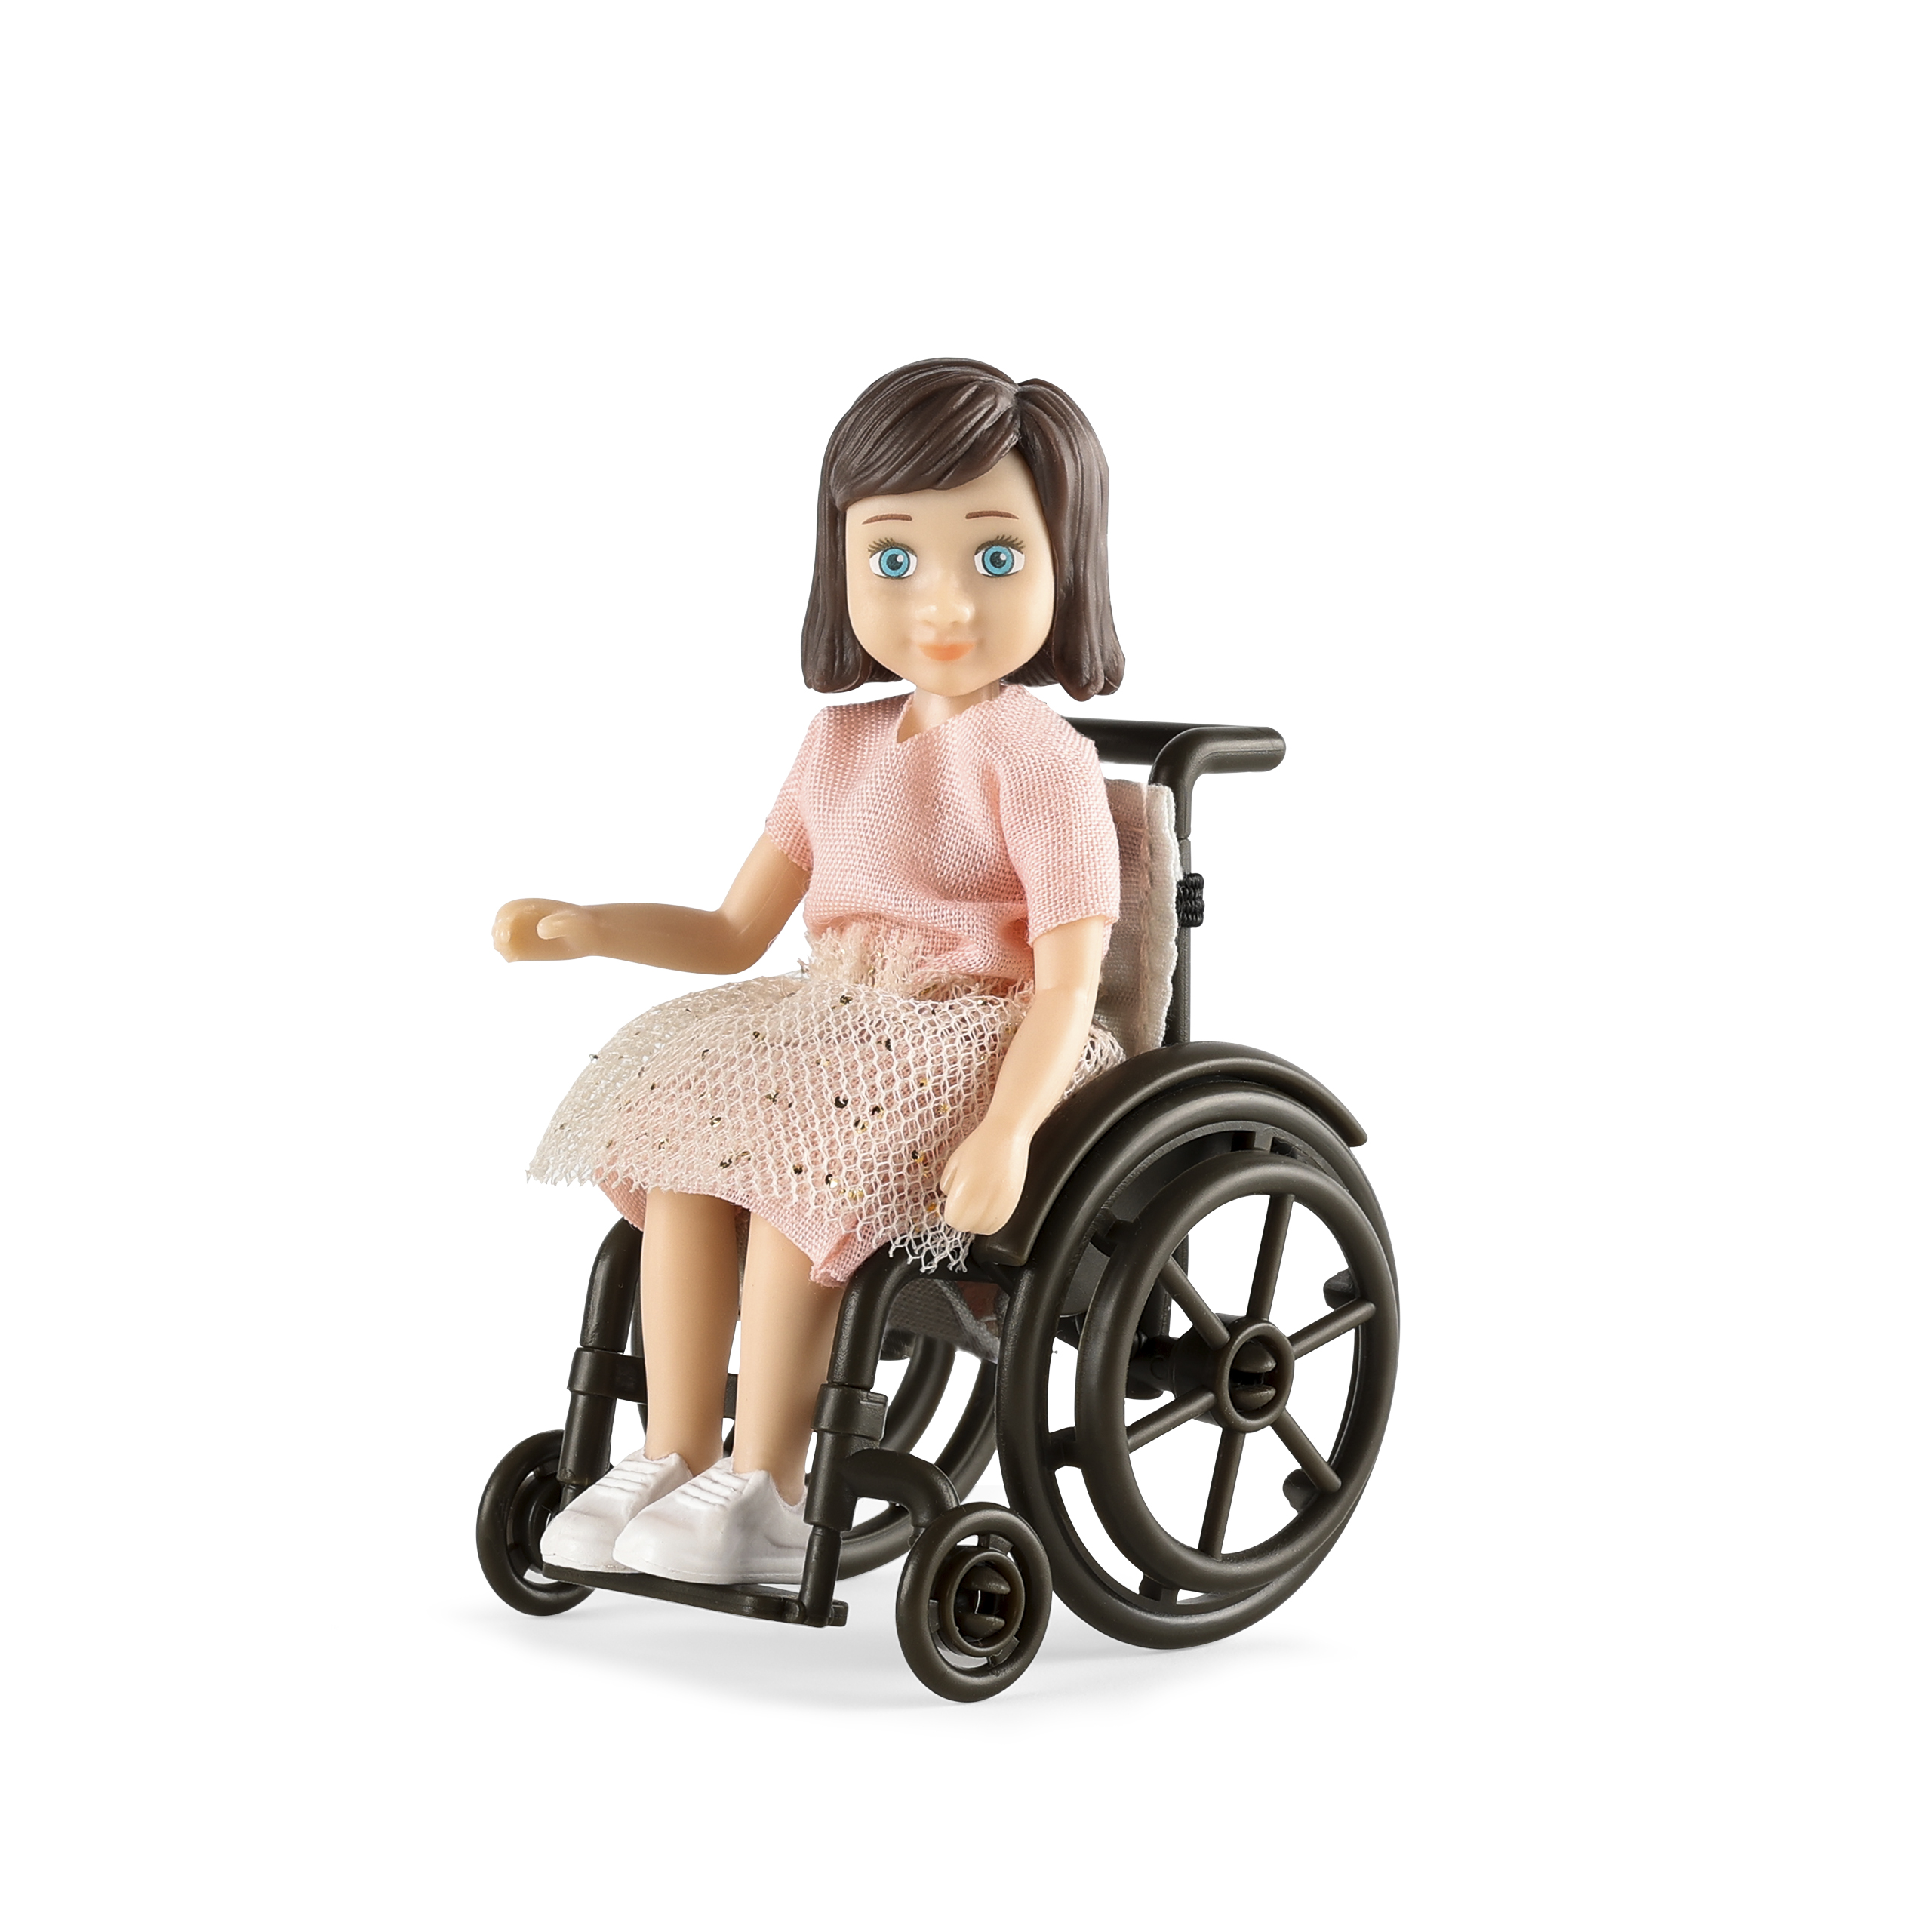 Lundby lundby	dukke til dukkehus	med rullestol